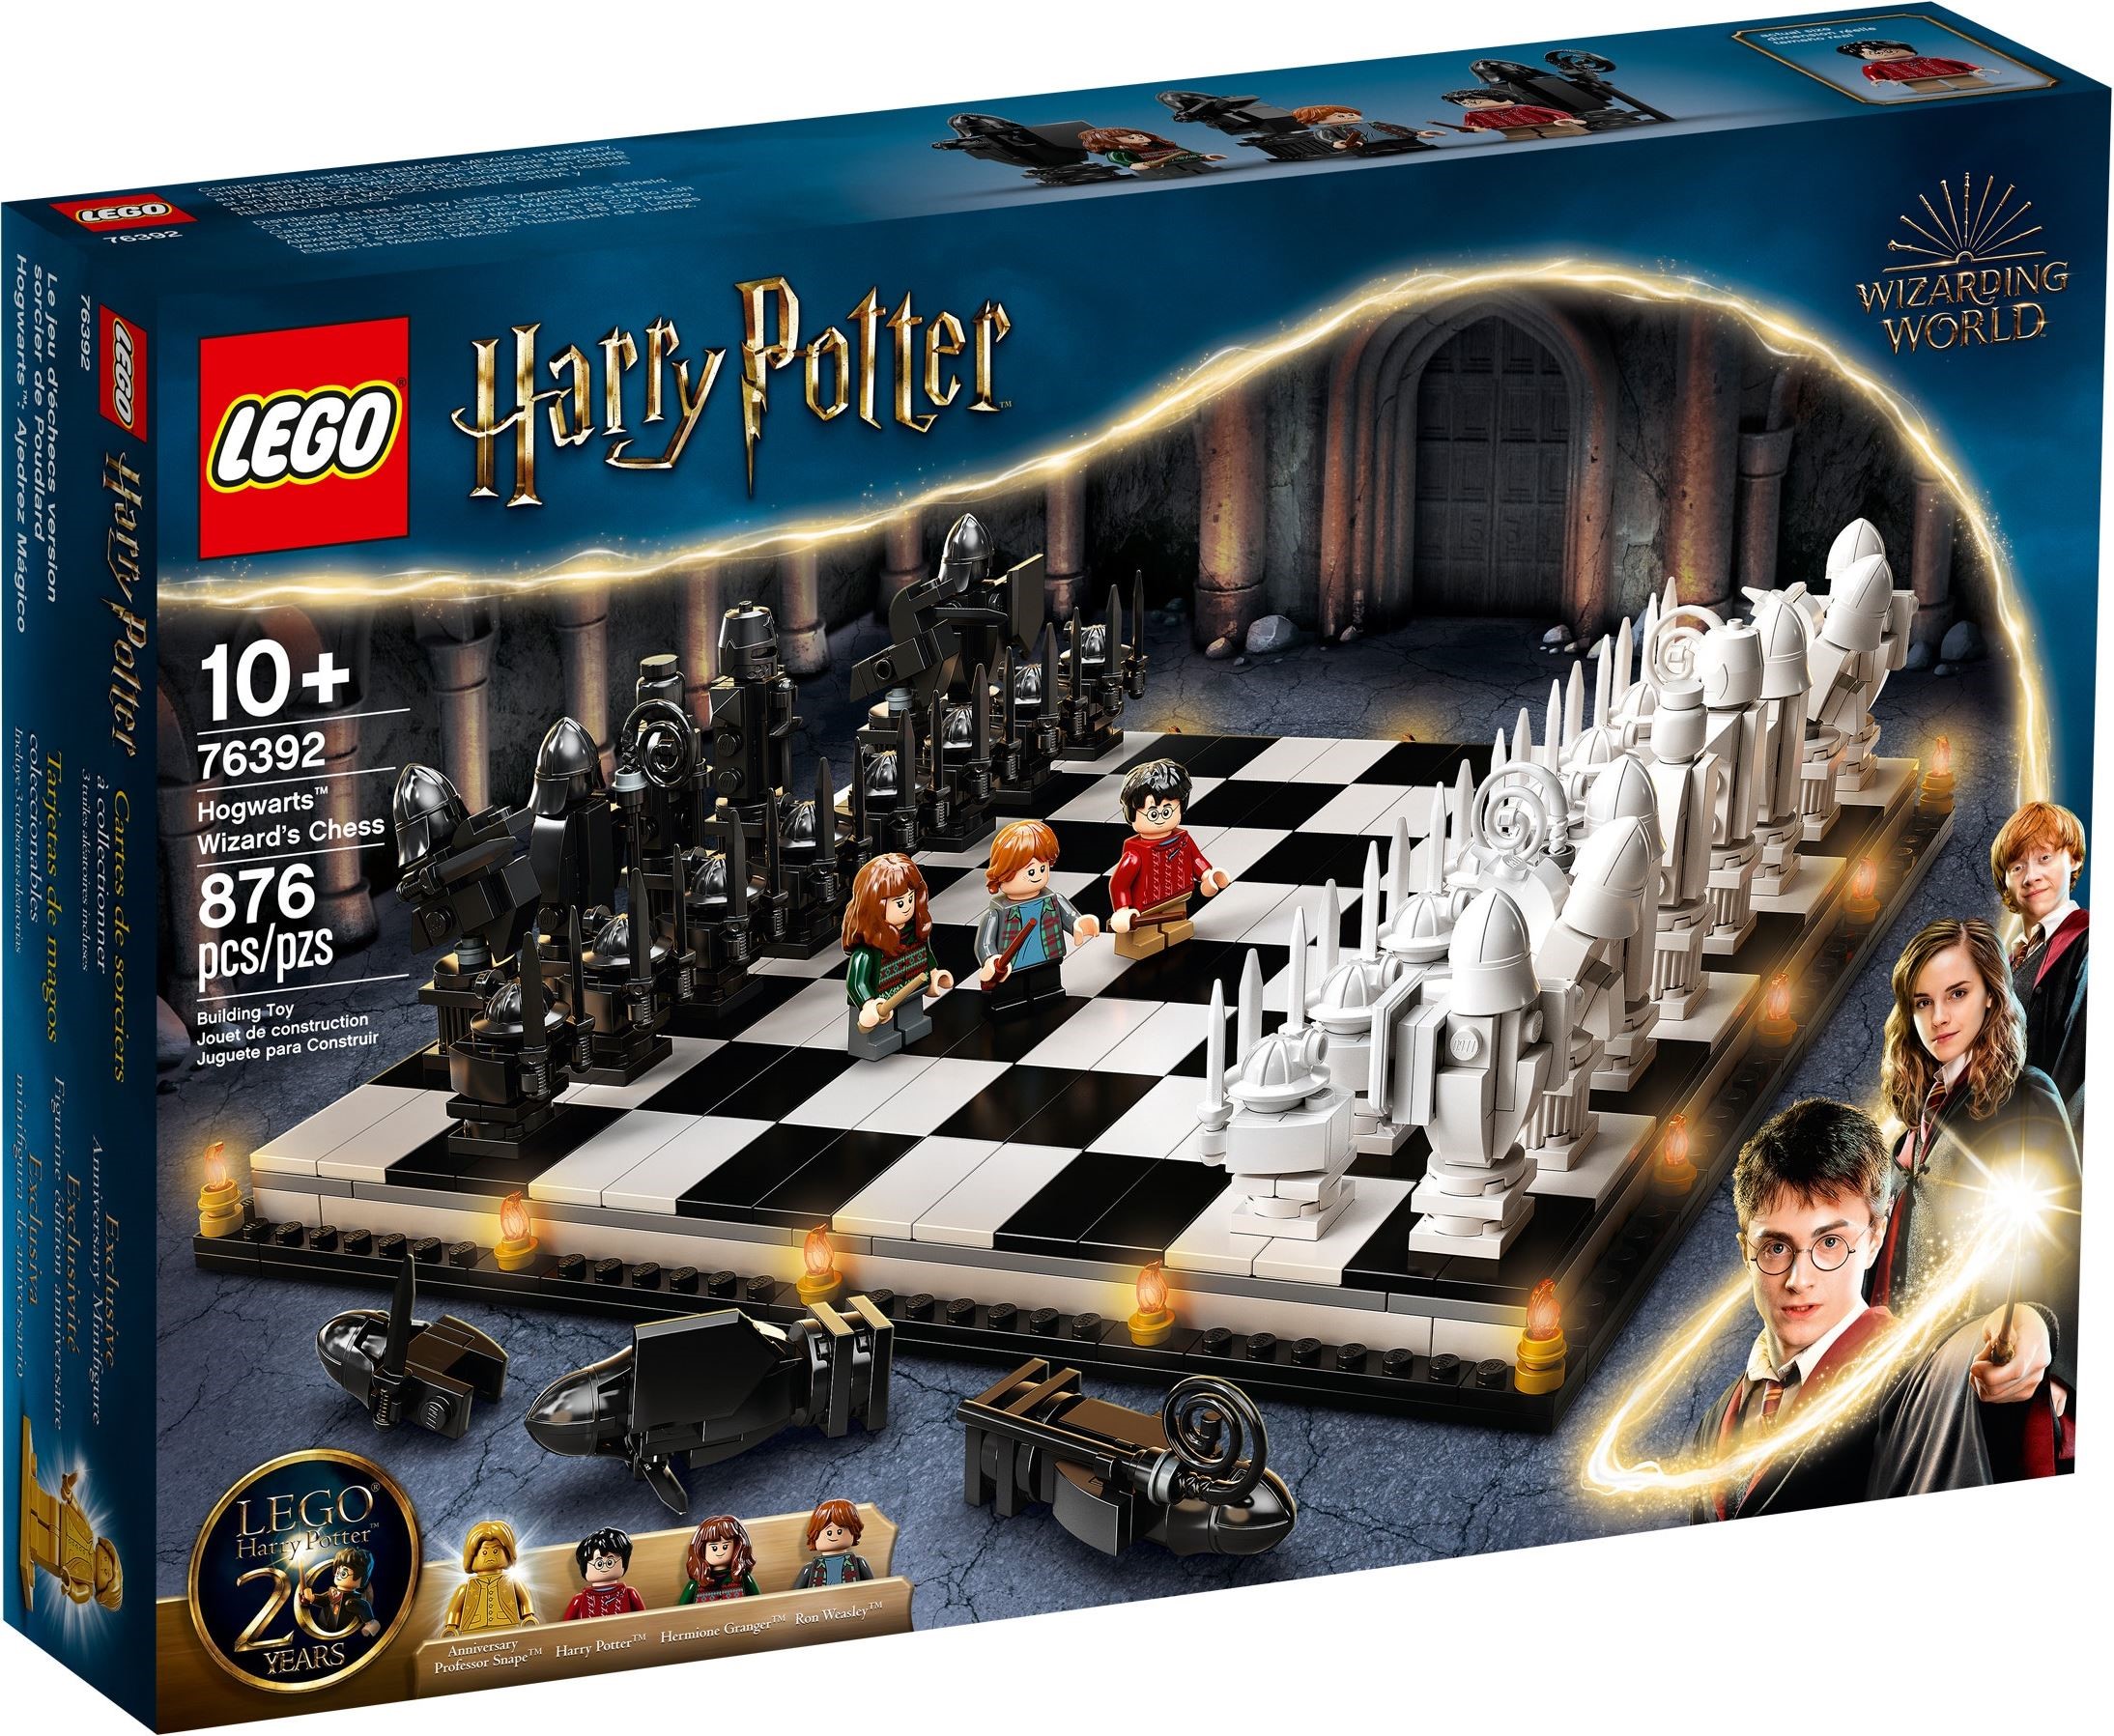 LEGO Chess Set 40174 - US